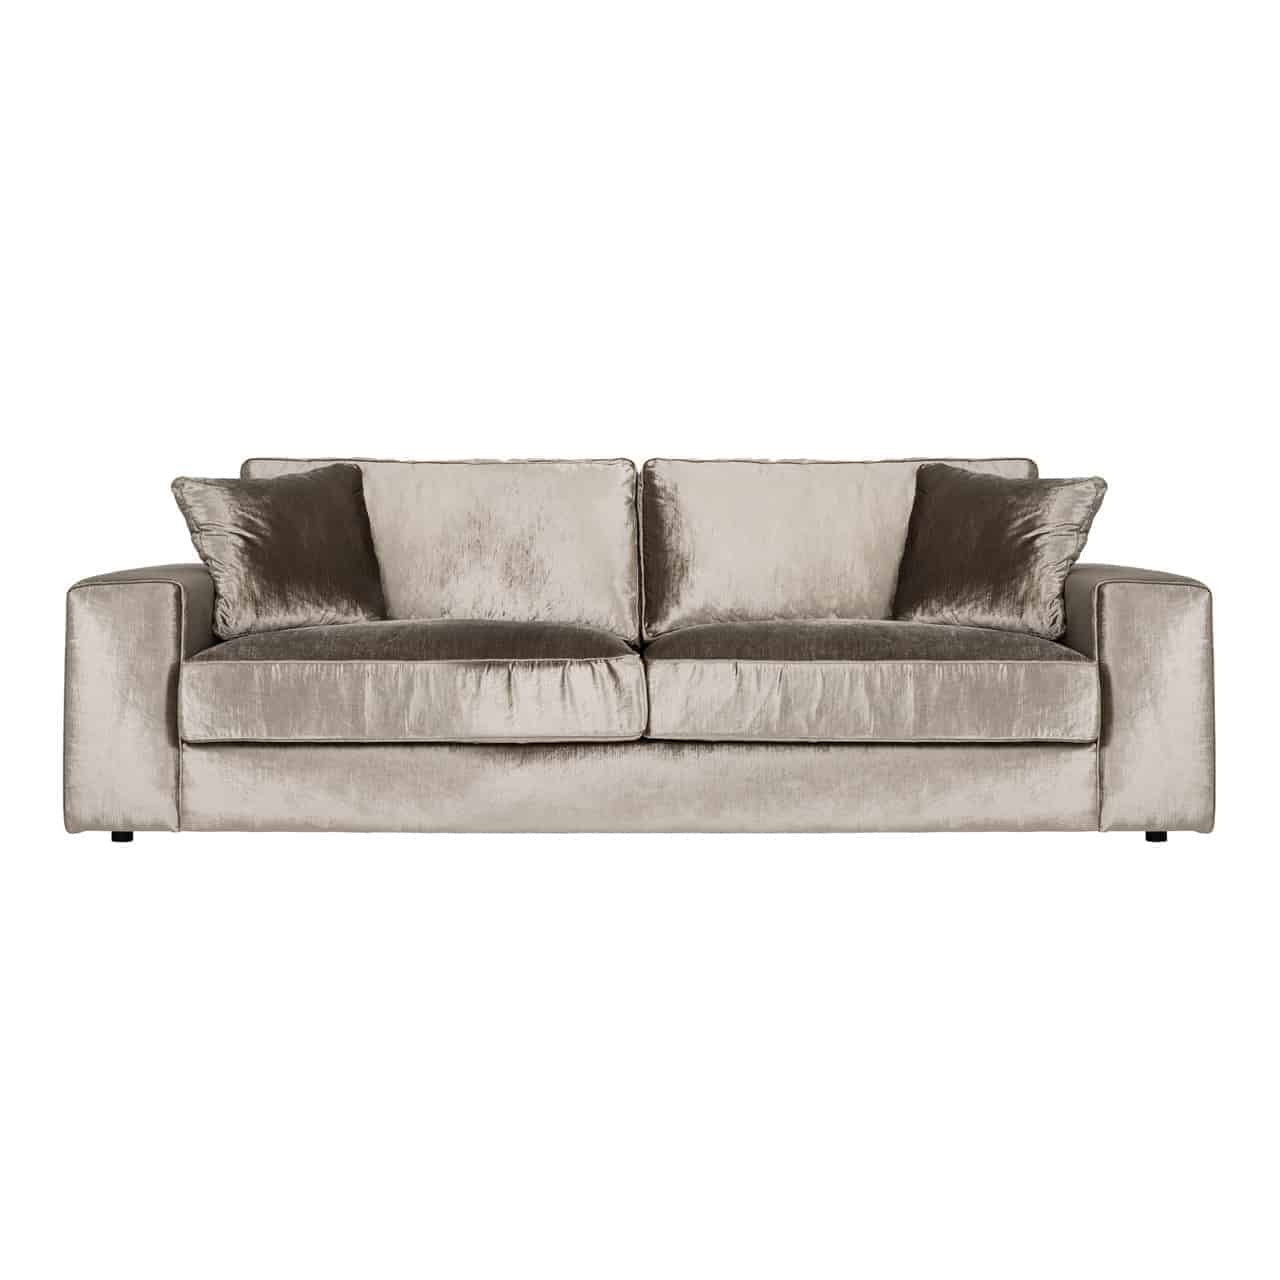 Modernes Sofa mit khakifarbenem, glänzenden Bezug; gerade, niedrige Armlehnen; zwei dicke Sitz,- und Rückenpolster, zwei quadratische Kissen in den Ecken.